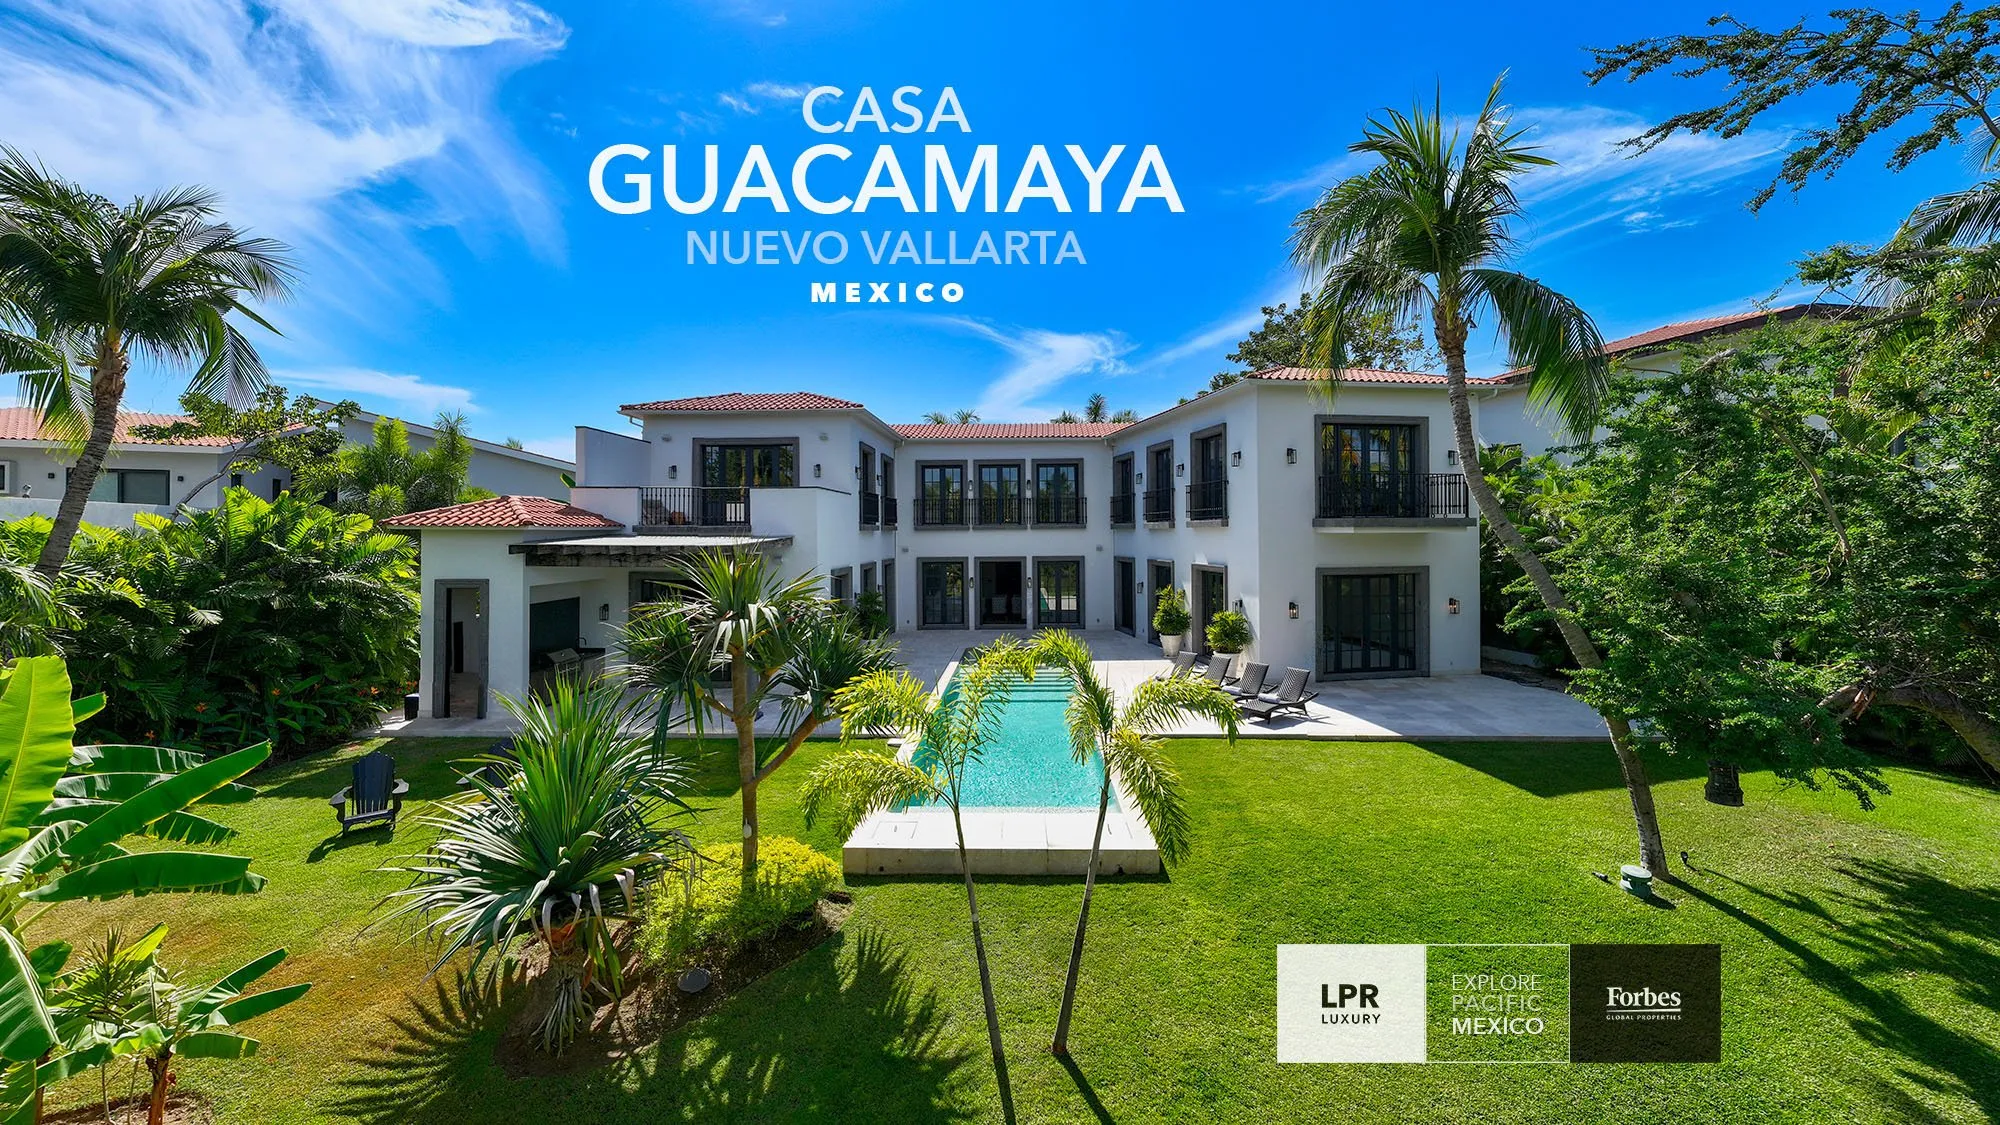 Casa Guacamaya - Nuevo Vallarta, Riviera Nayarit, Mexico - Luxury real estate at El Tigre, Puerto Vallarta, Mexico